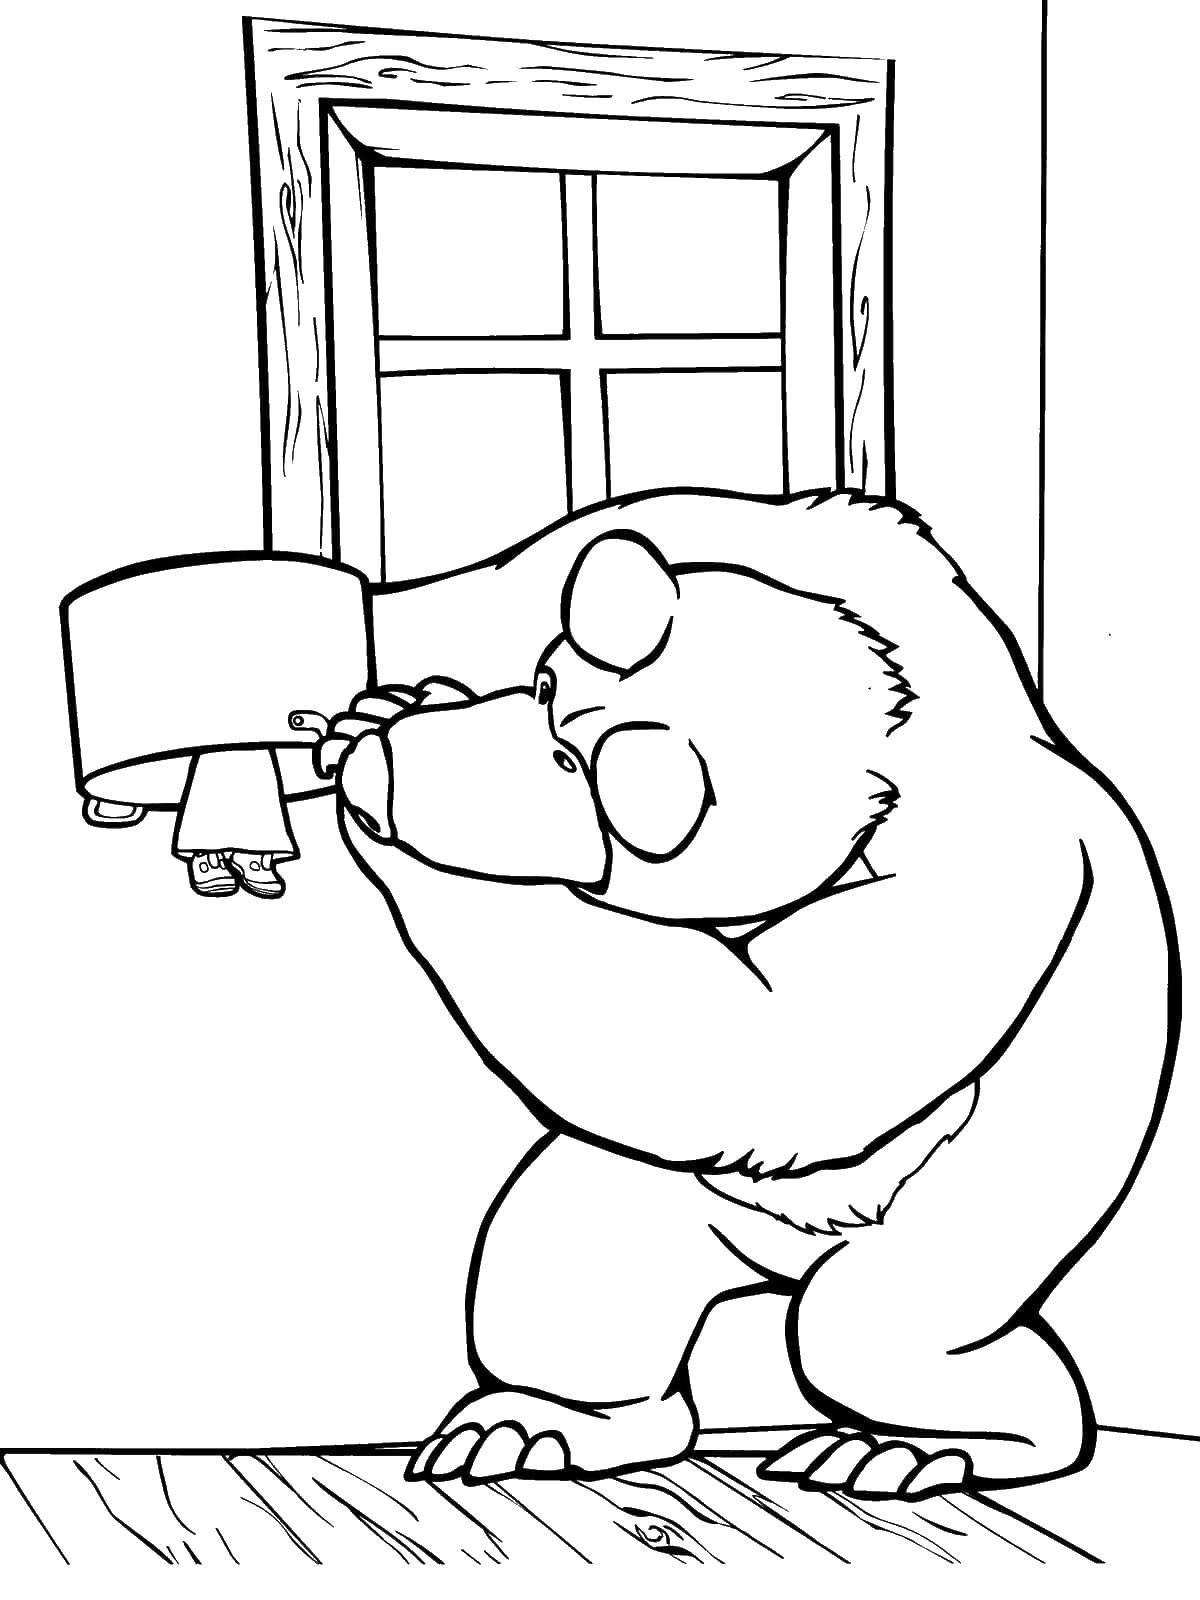 Раскраски для детей про озорную Машу из мультфильма Маша и медведь  Мишка ищет машу